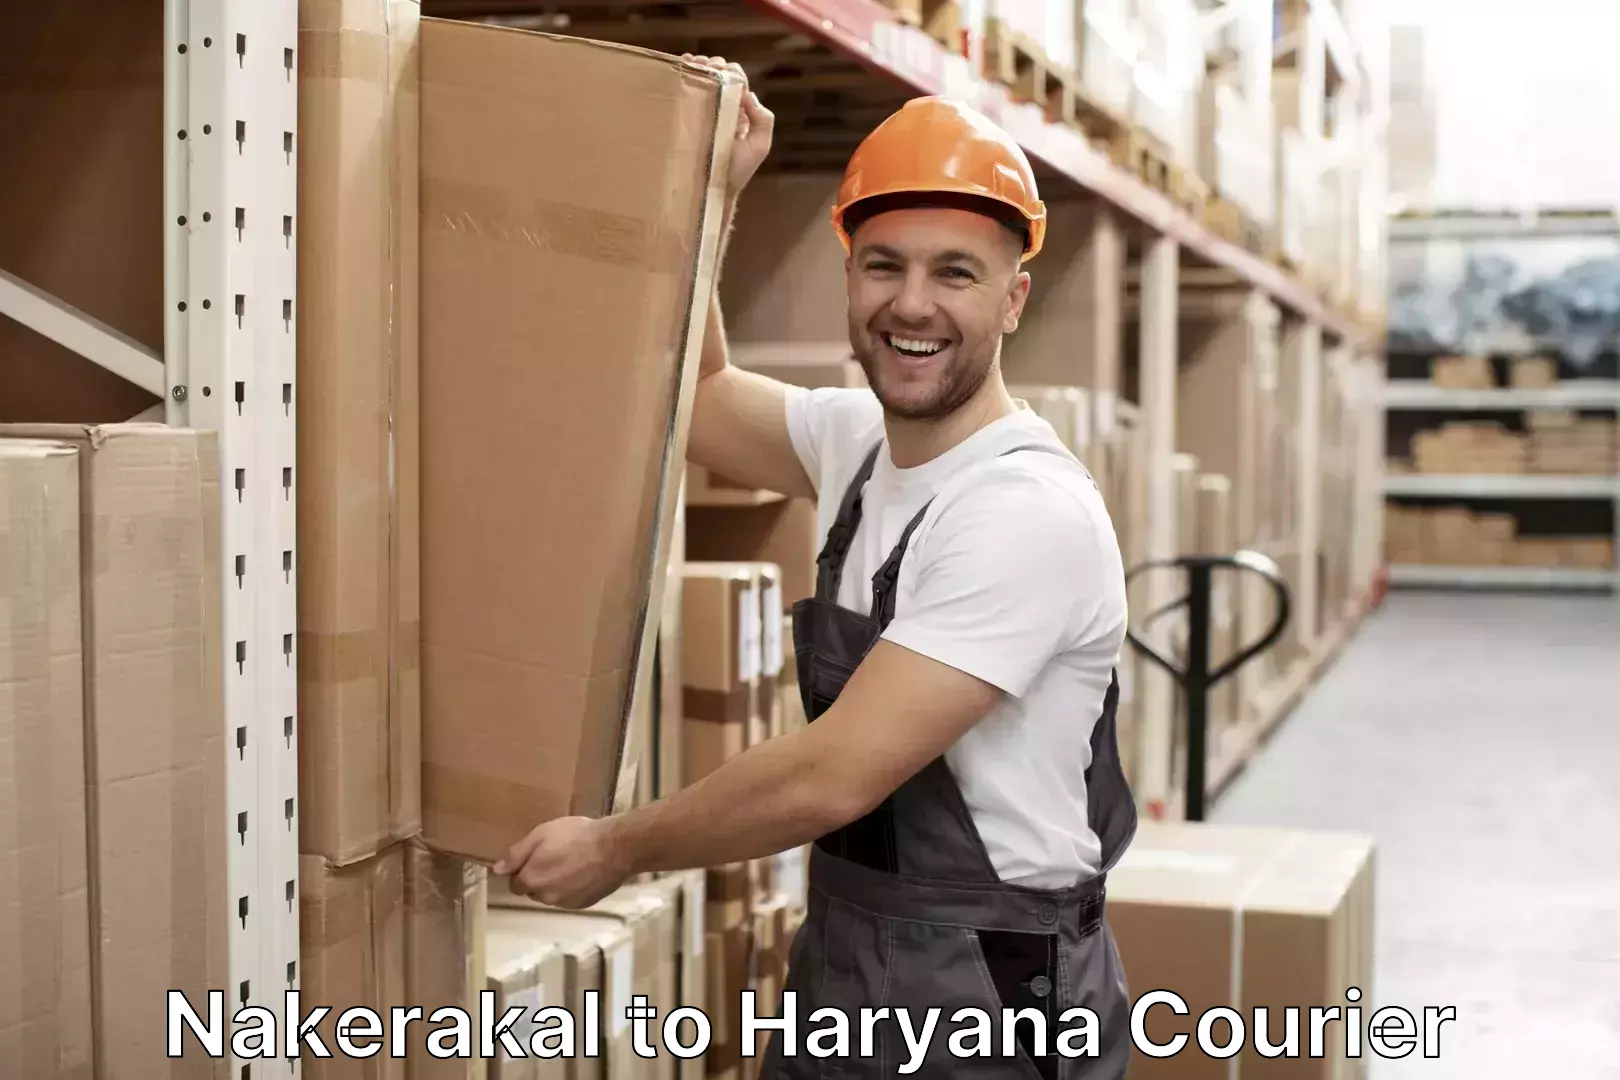 Baggage shipping experts Nakerakal to Haryana